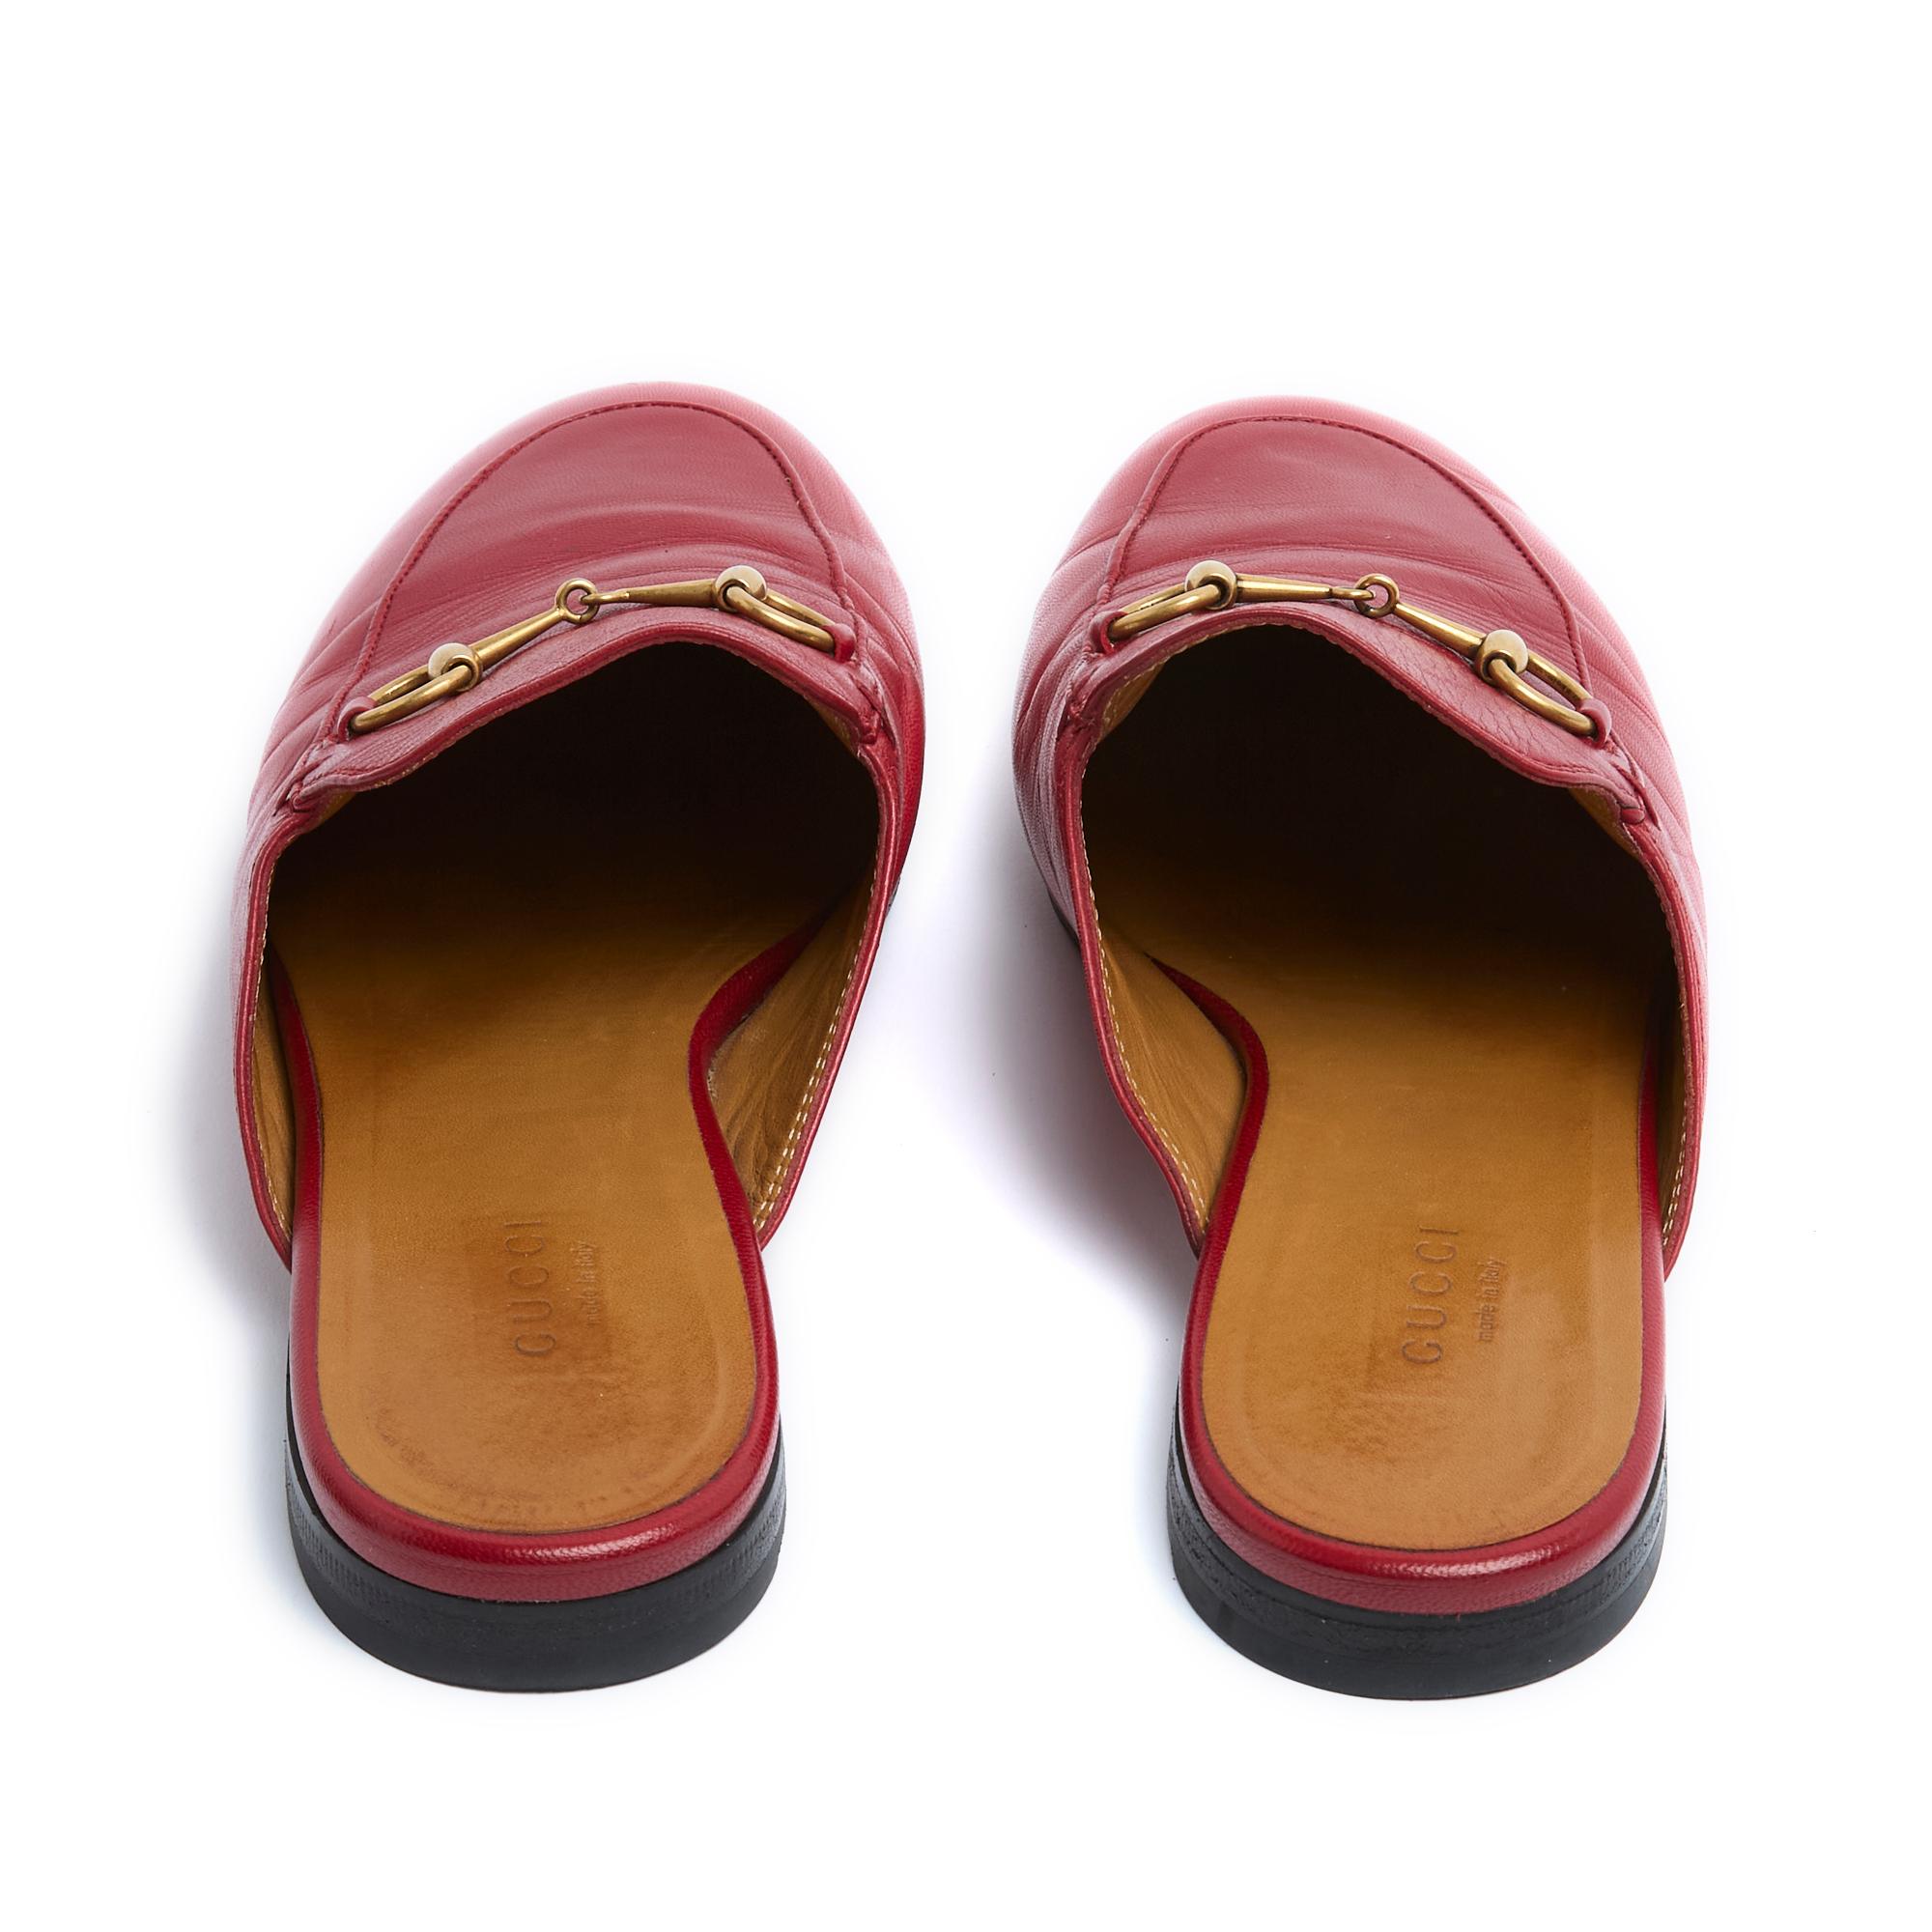 Gucci Princetown rot Leder Loafers Mules EU39 US8.5 für Damen oder Herren im Angebot